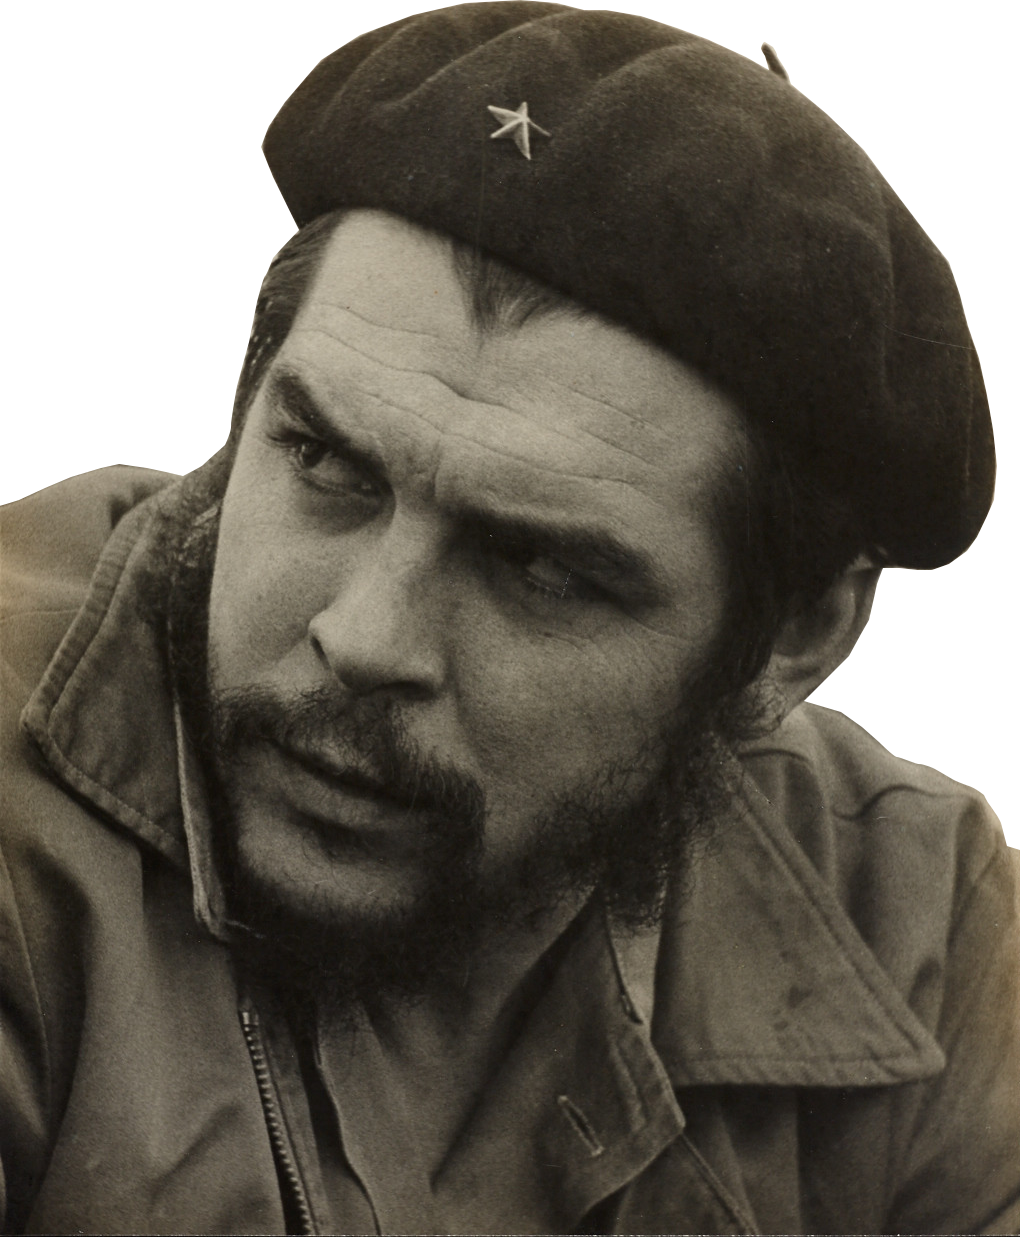 Che Guevara PNG Image